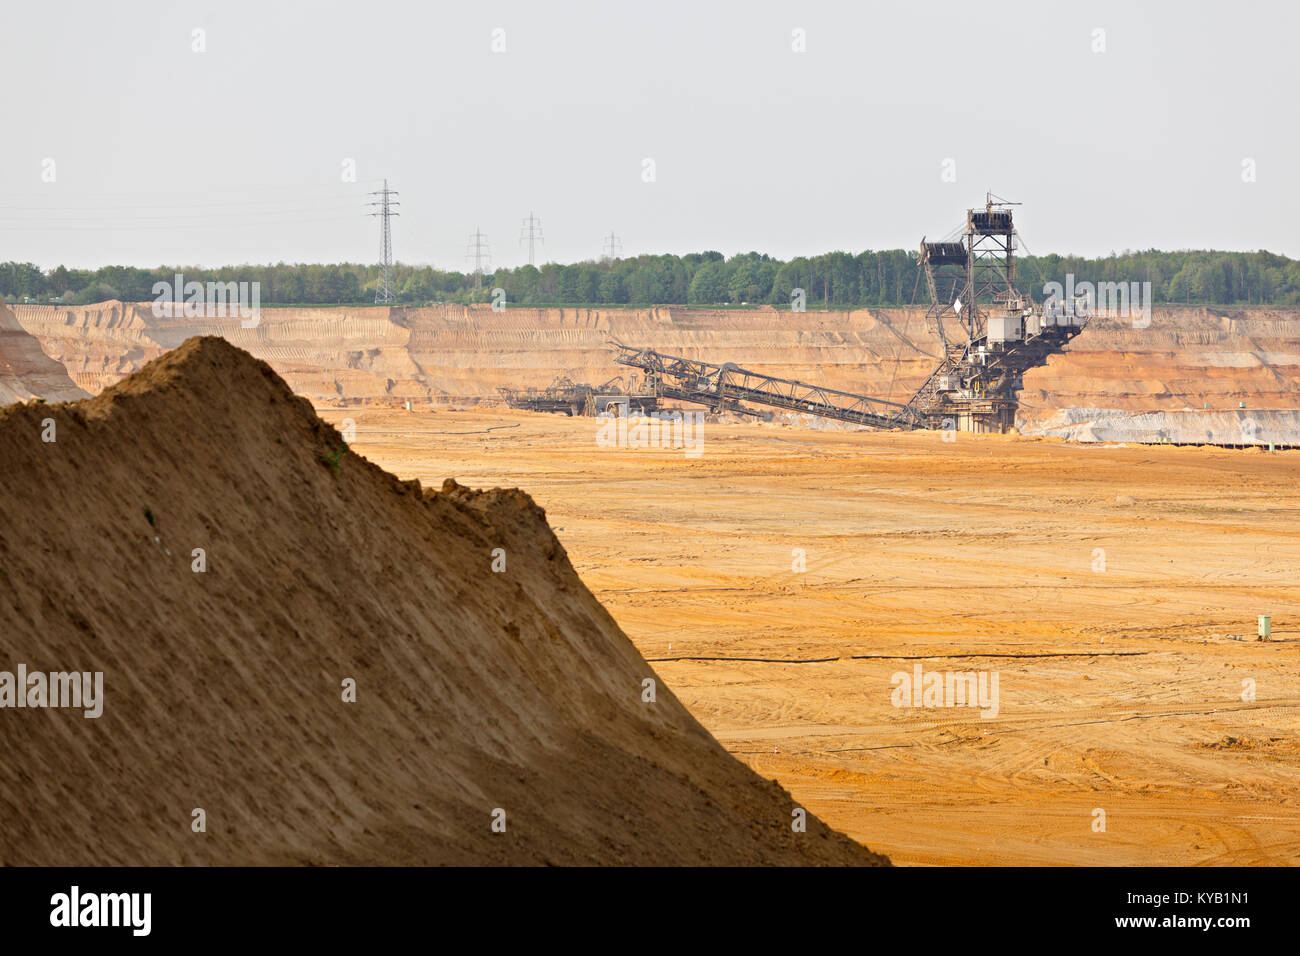 Ein braunkohletagebau Mine mit einem riesigen schaufelradbagger, einer der weltweit größten beweglichen land Fahrzeuge. Stockfoto